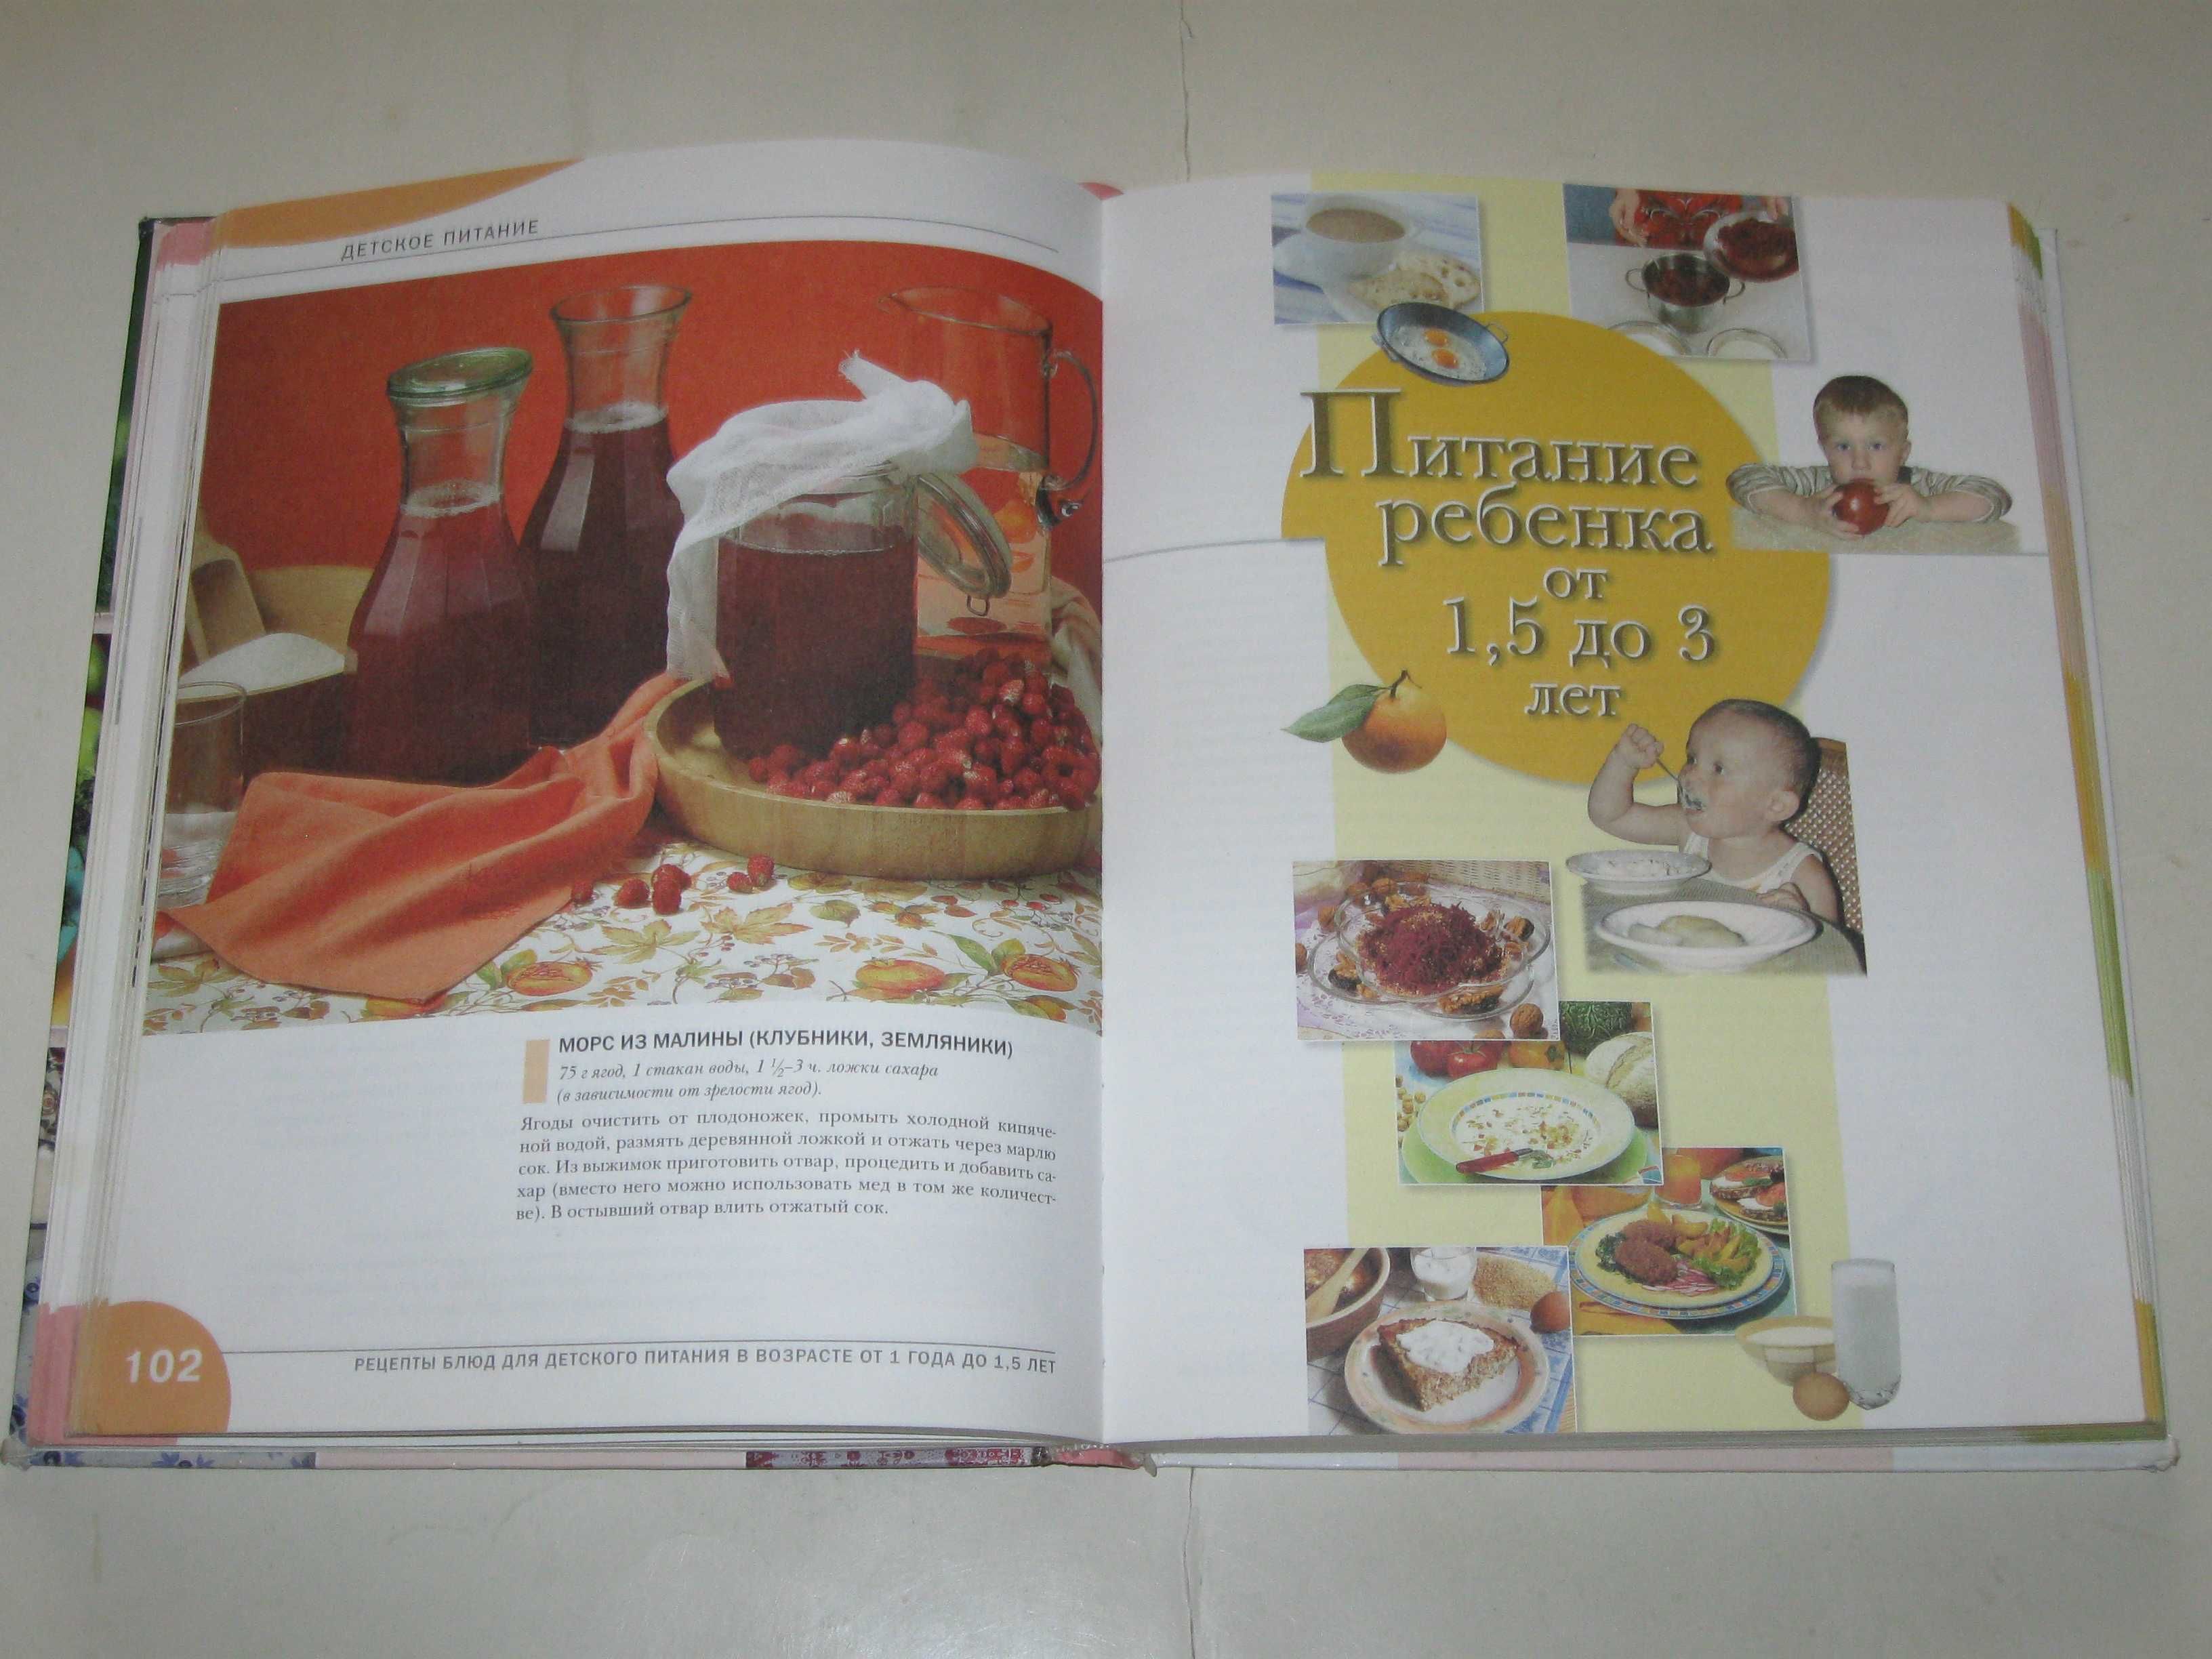 Книга ДЕТСКОЕ ПИТАНИЕ более 450 рецептов полезных блюд (Эксмо, 2008)